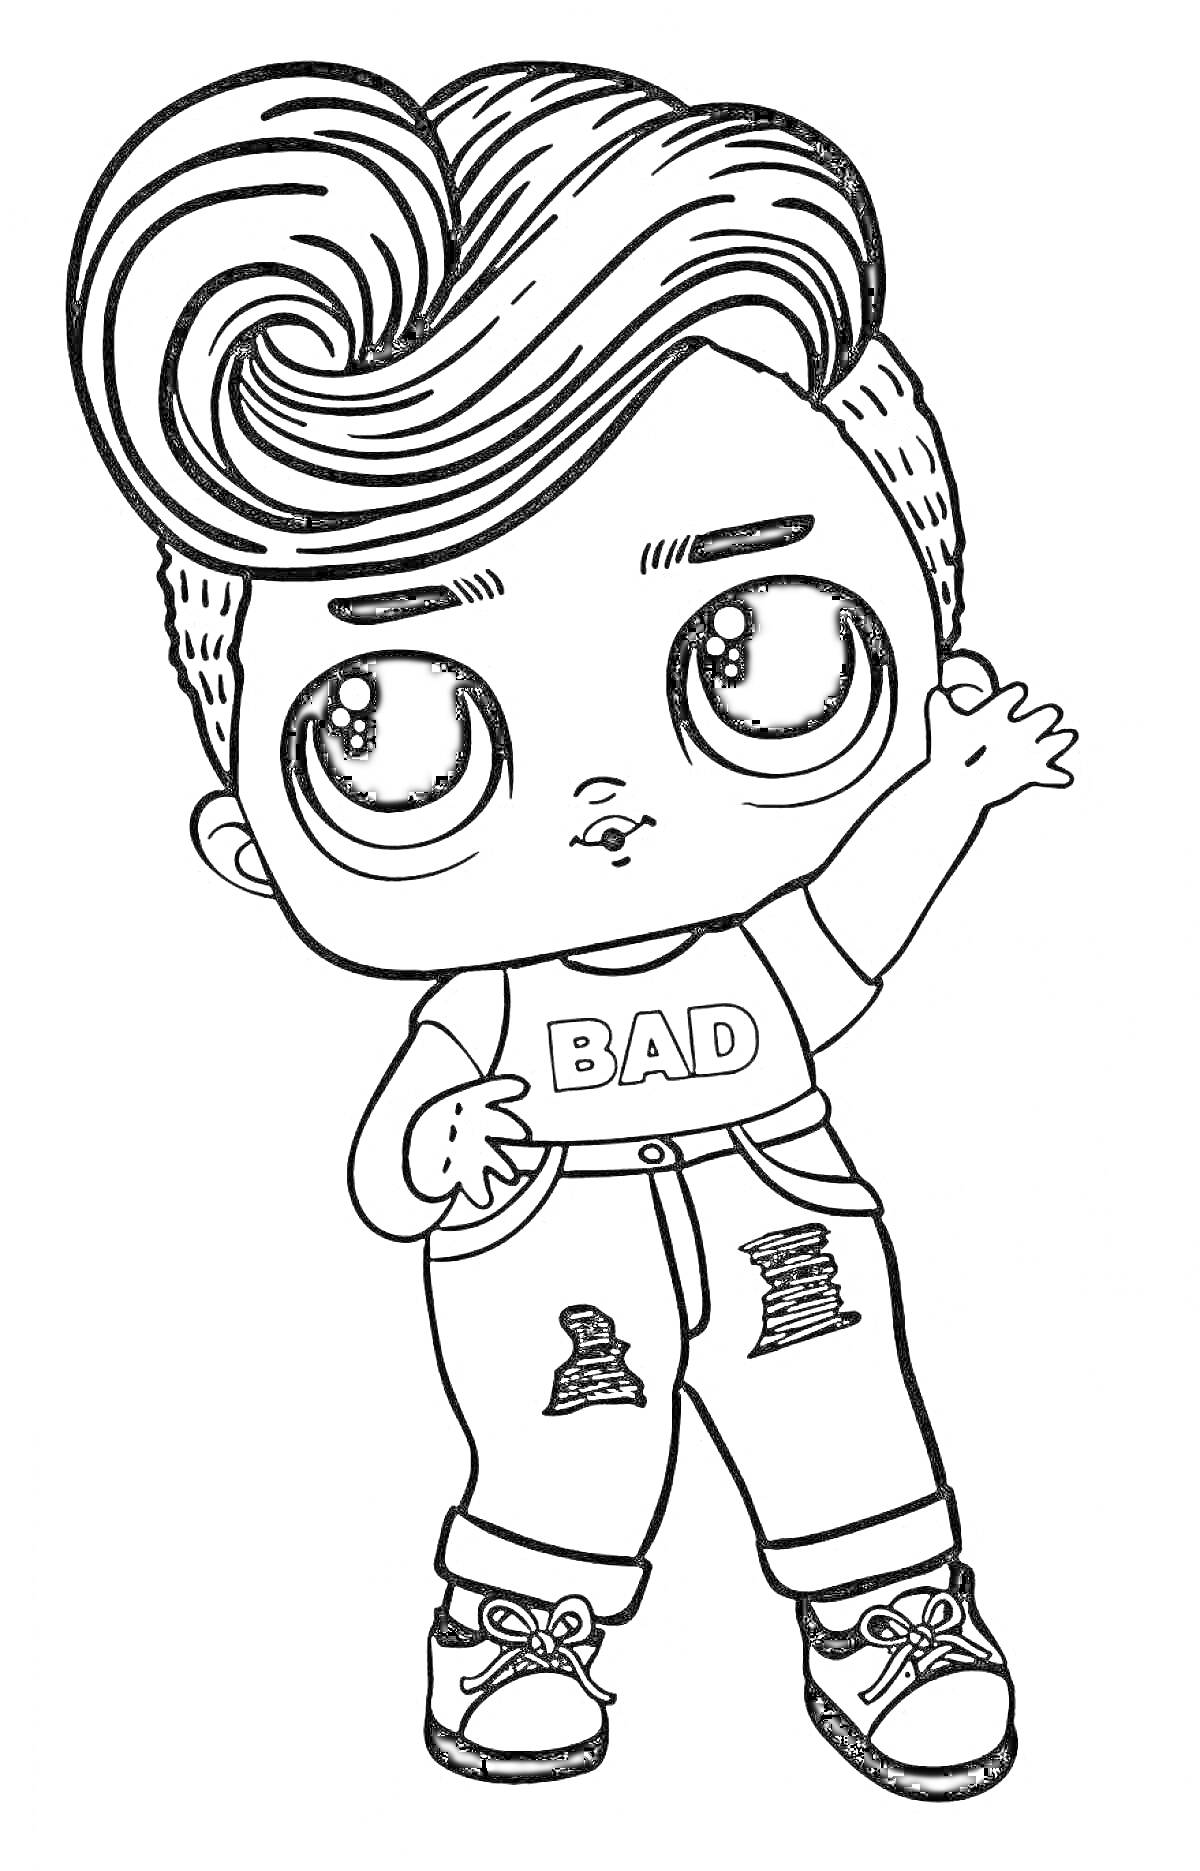 Раскраска Мальчик кукла ЛОЛ с надписью BAD на футболке, джинсами с дырами и волнистыми волосами